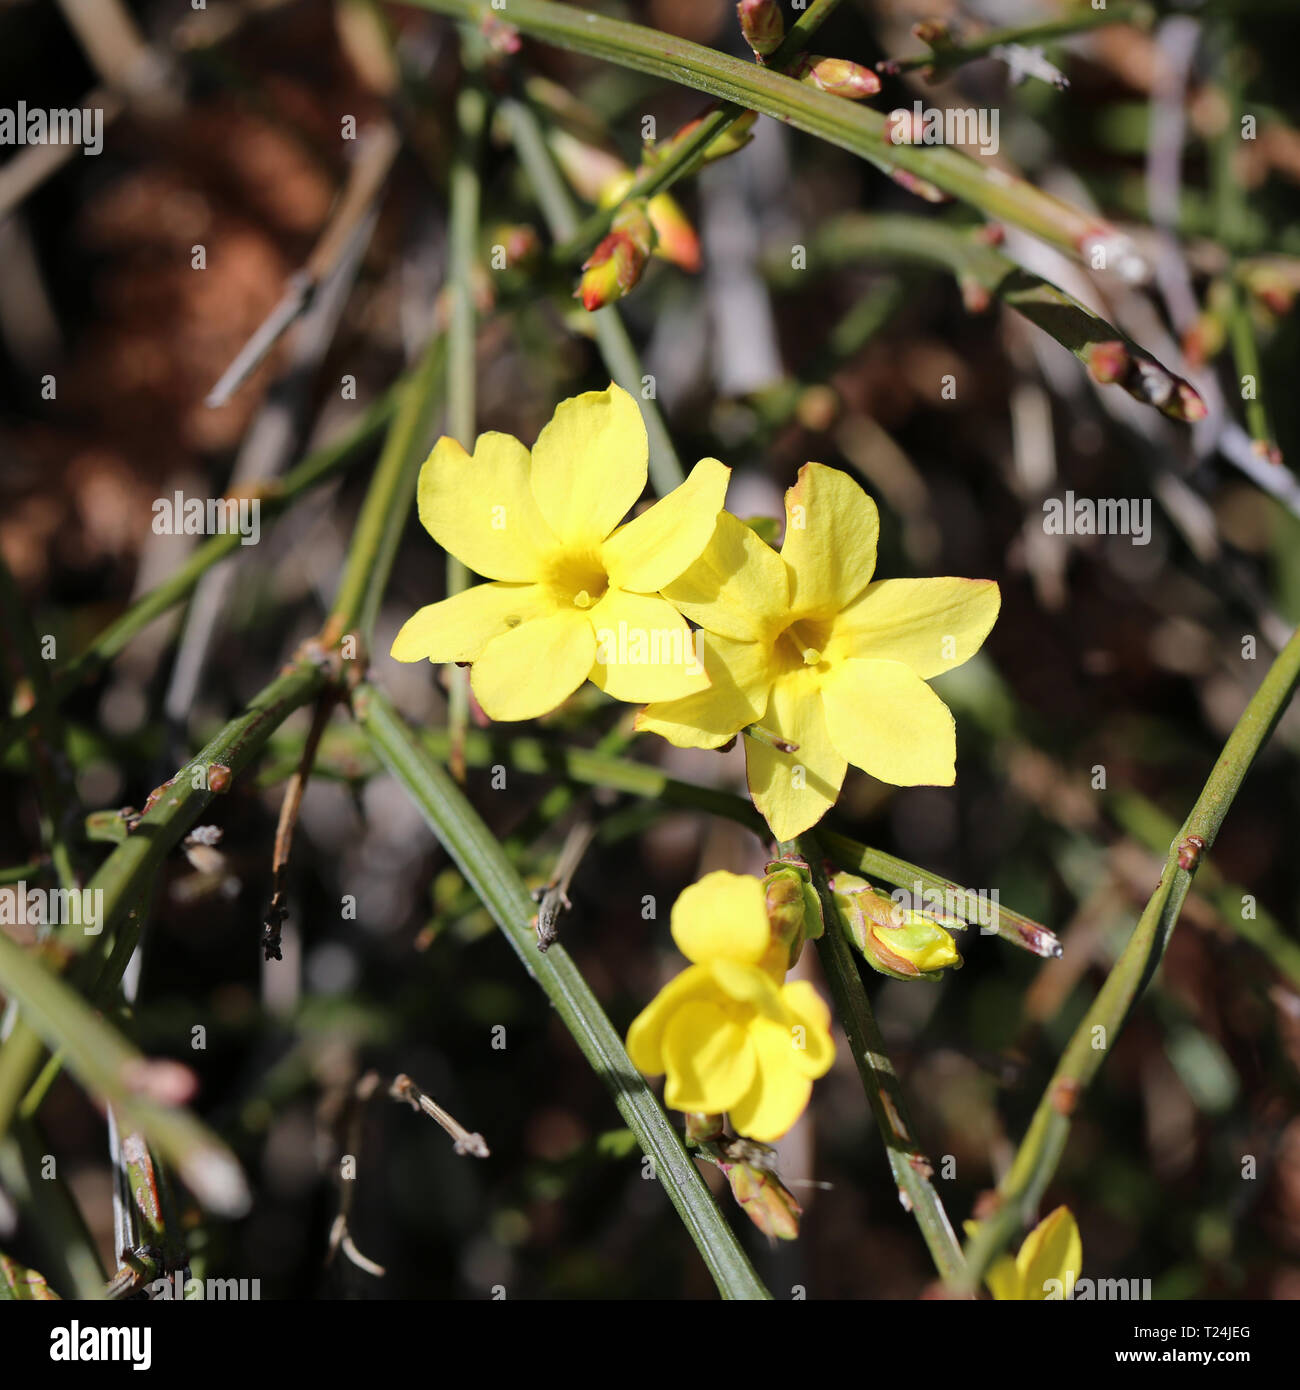 Kleine gelbe Blumen wachsen aus einem Busch in der Schweiz. Schöne helle  Blüten mit einer schönen Form. An einem sonnigen Frühlingstag fotografiert  Stockfotografie - Alamy